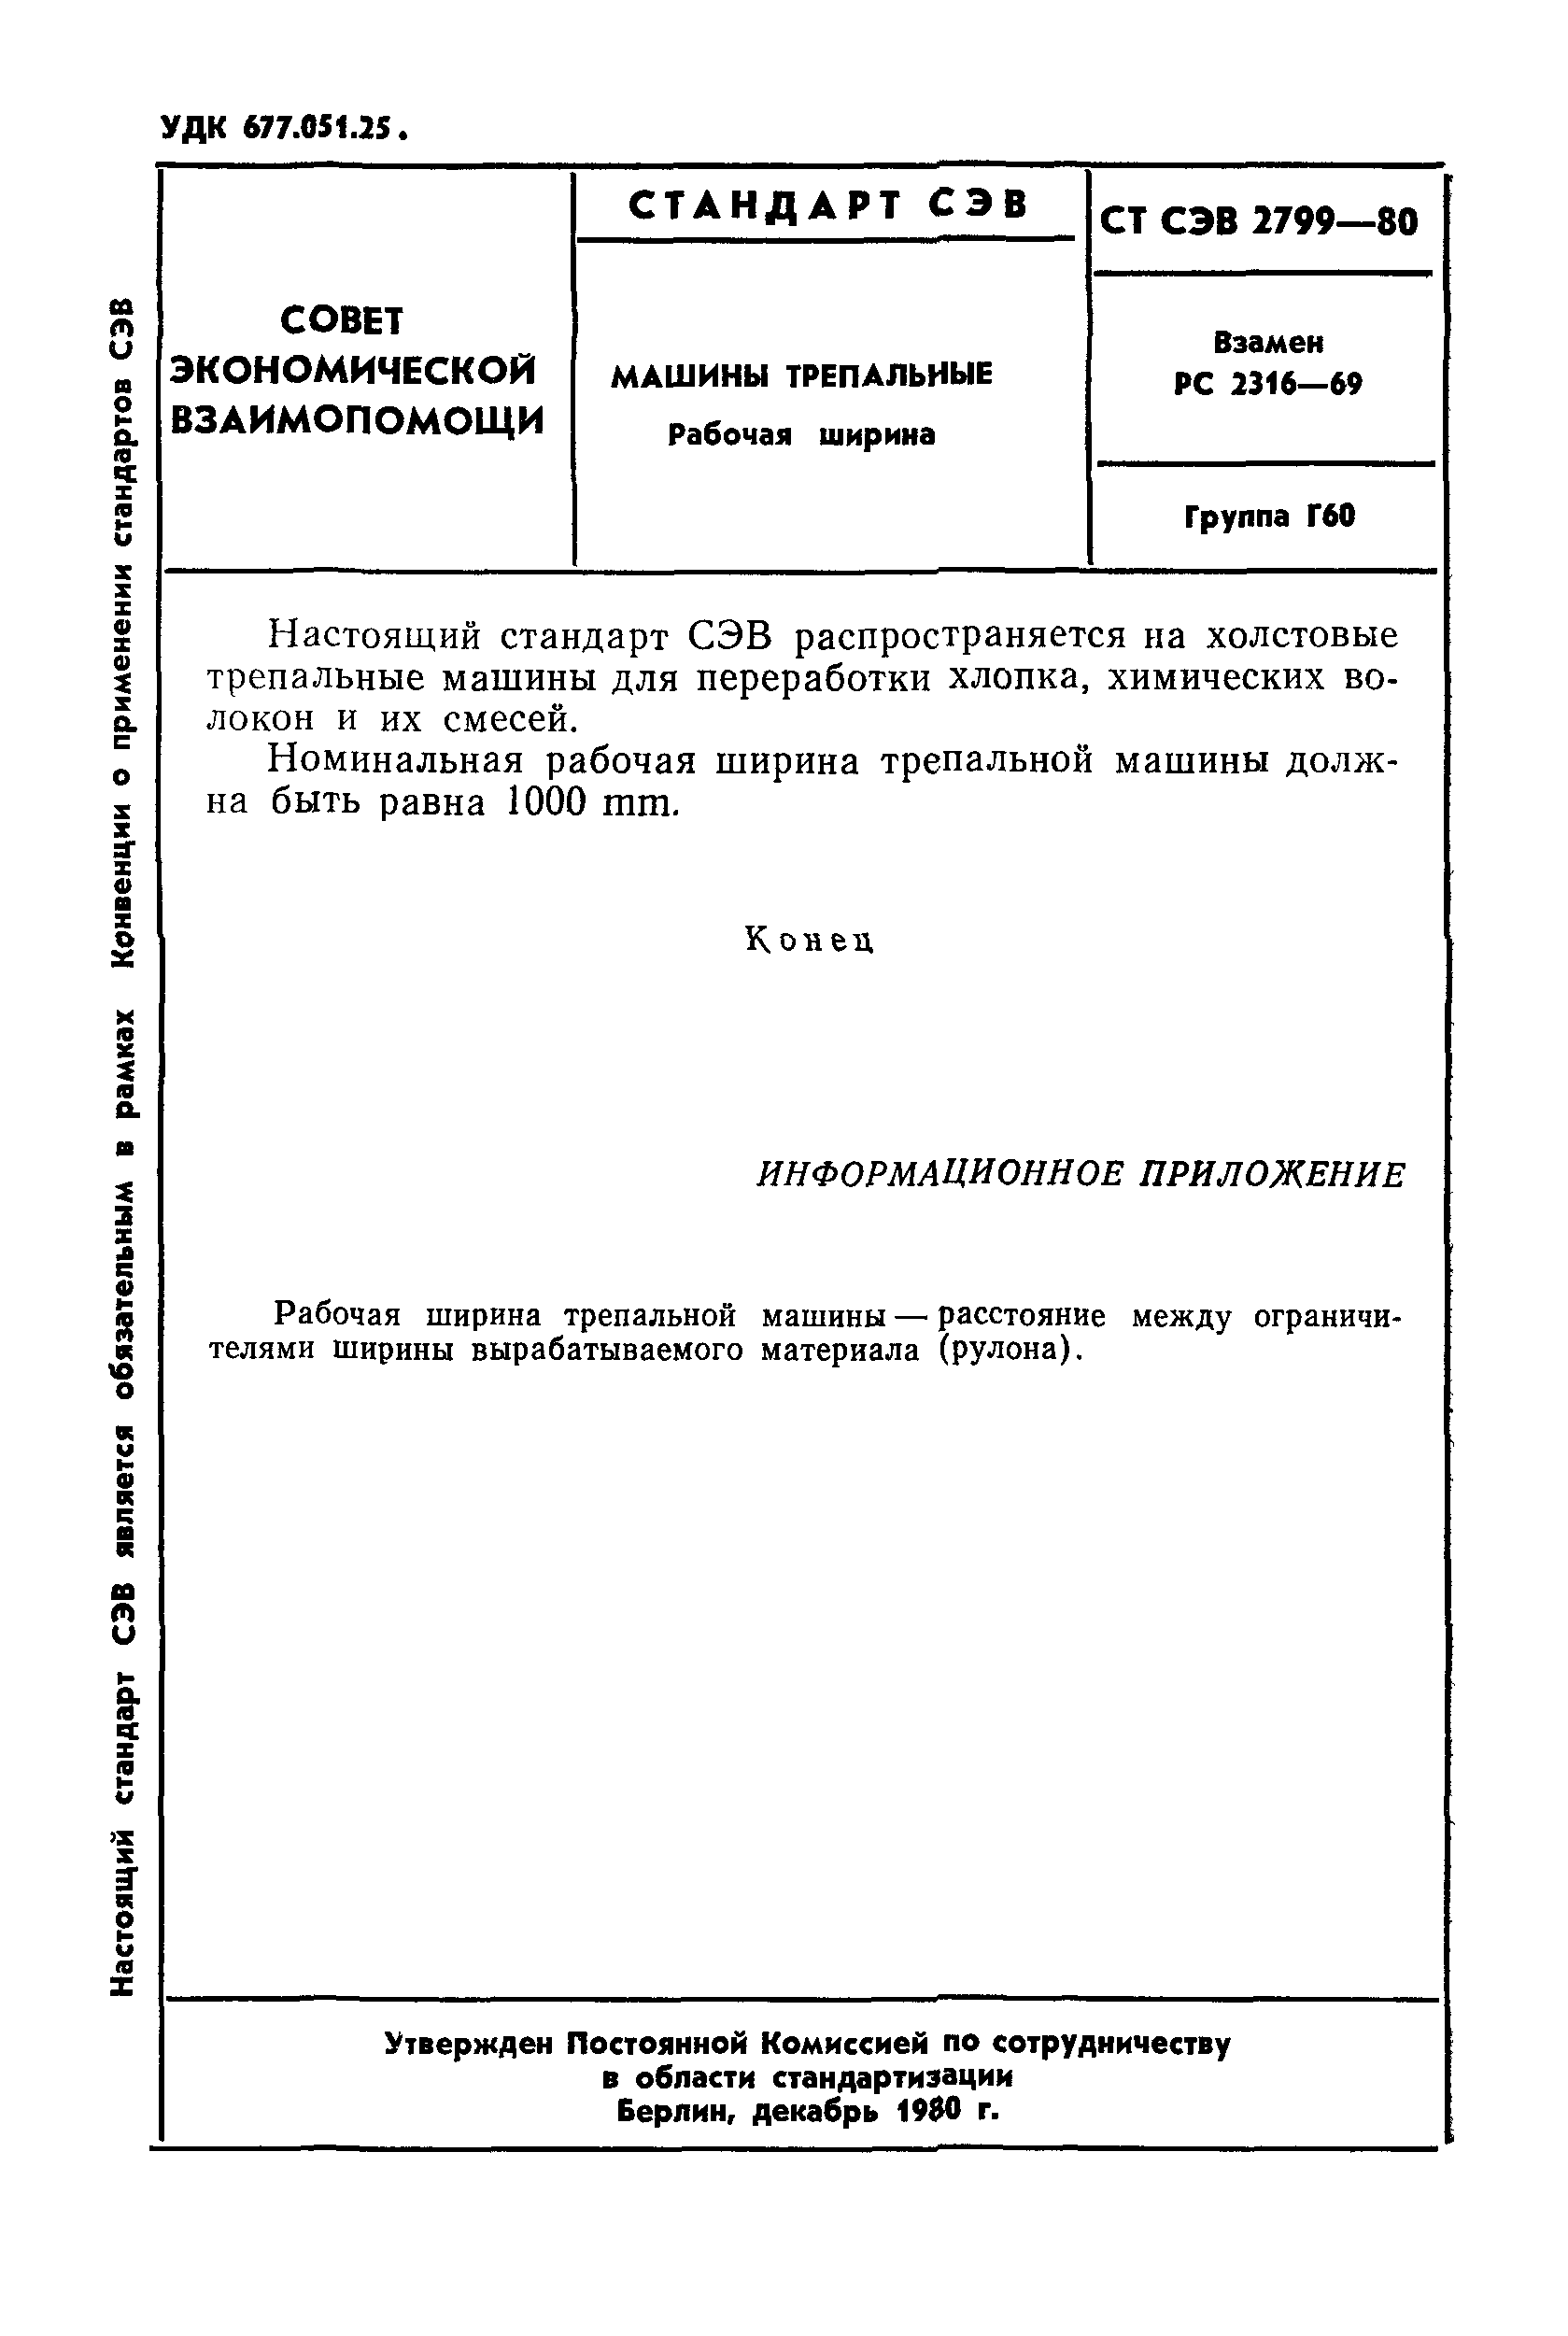 СТ СЭВ 2799-80